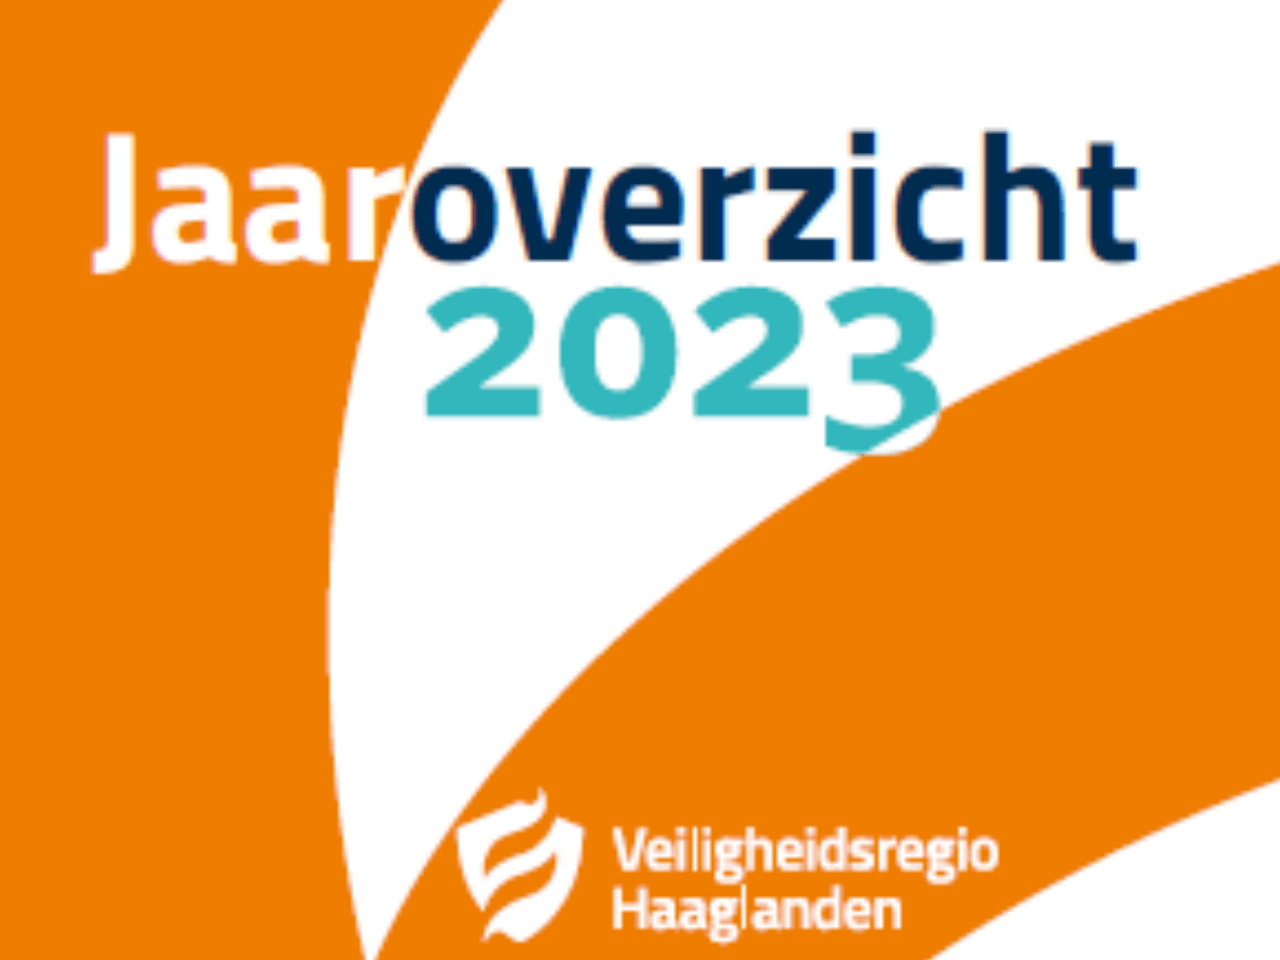 Een afbeelding met de tekst Jaaroverzicht 2023 en het logo van de veiligheidsregio Haaglanden